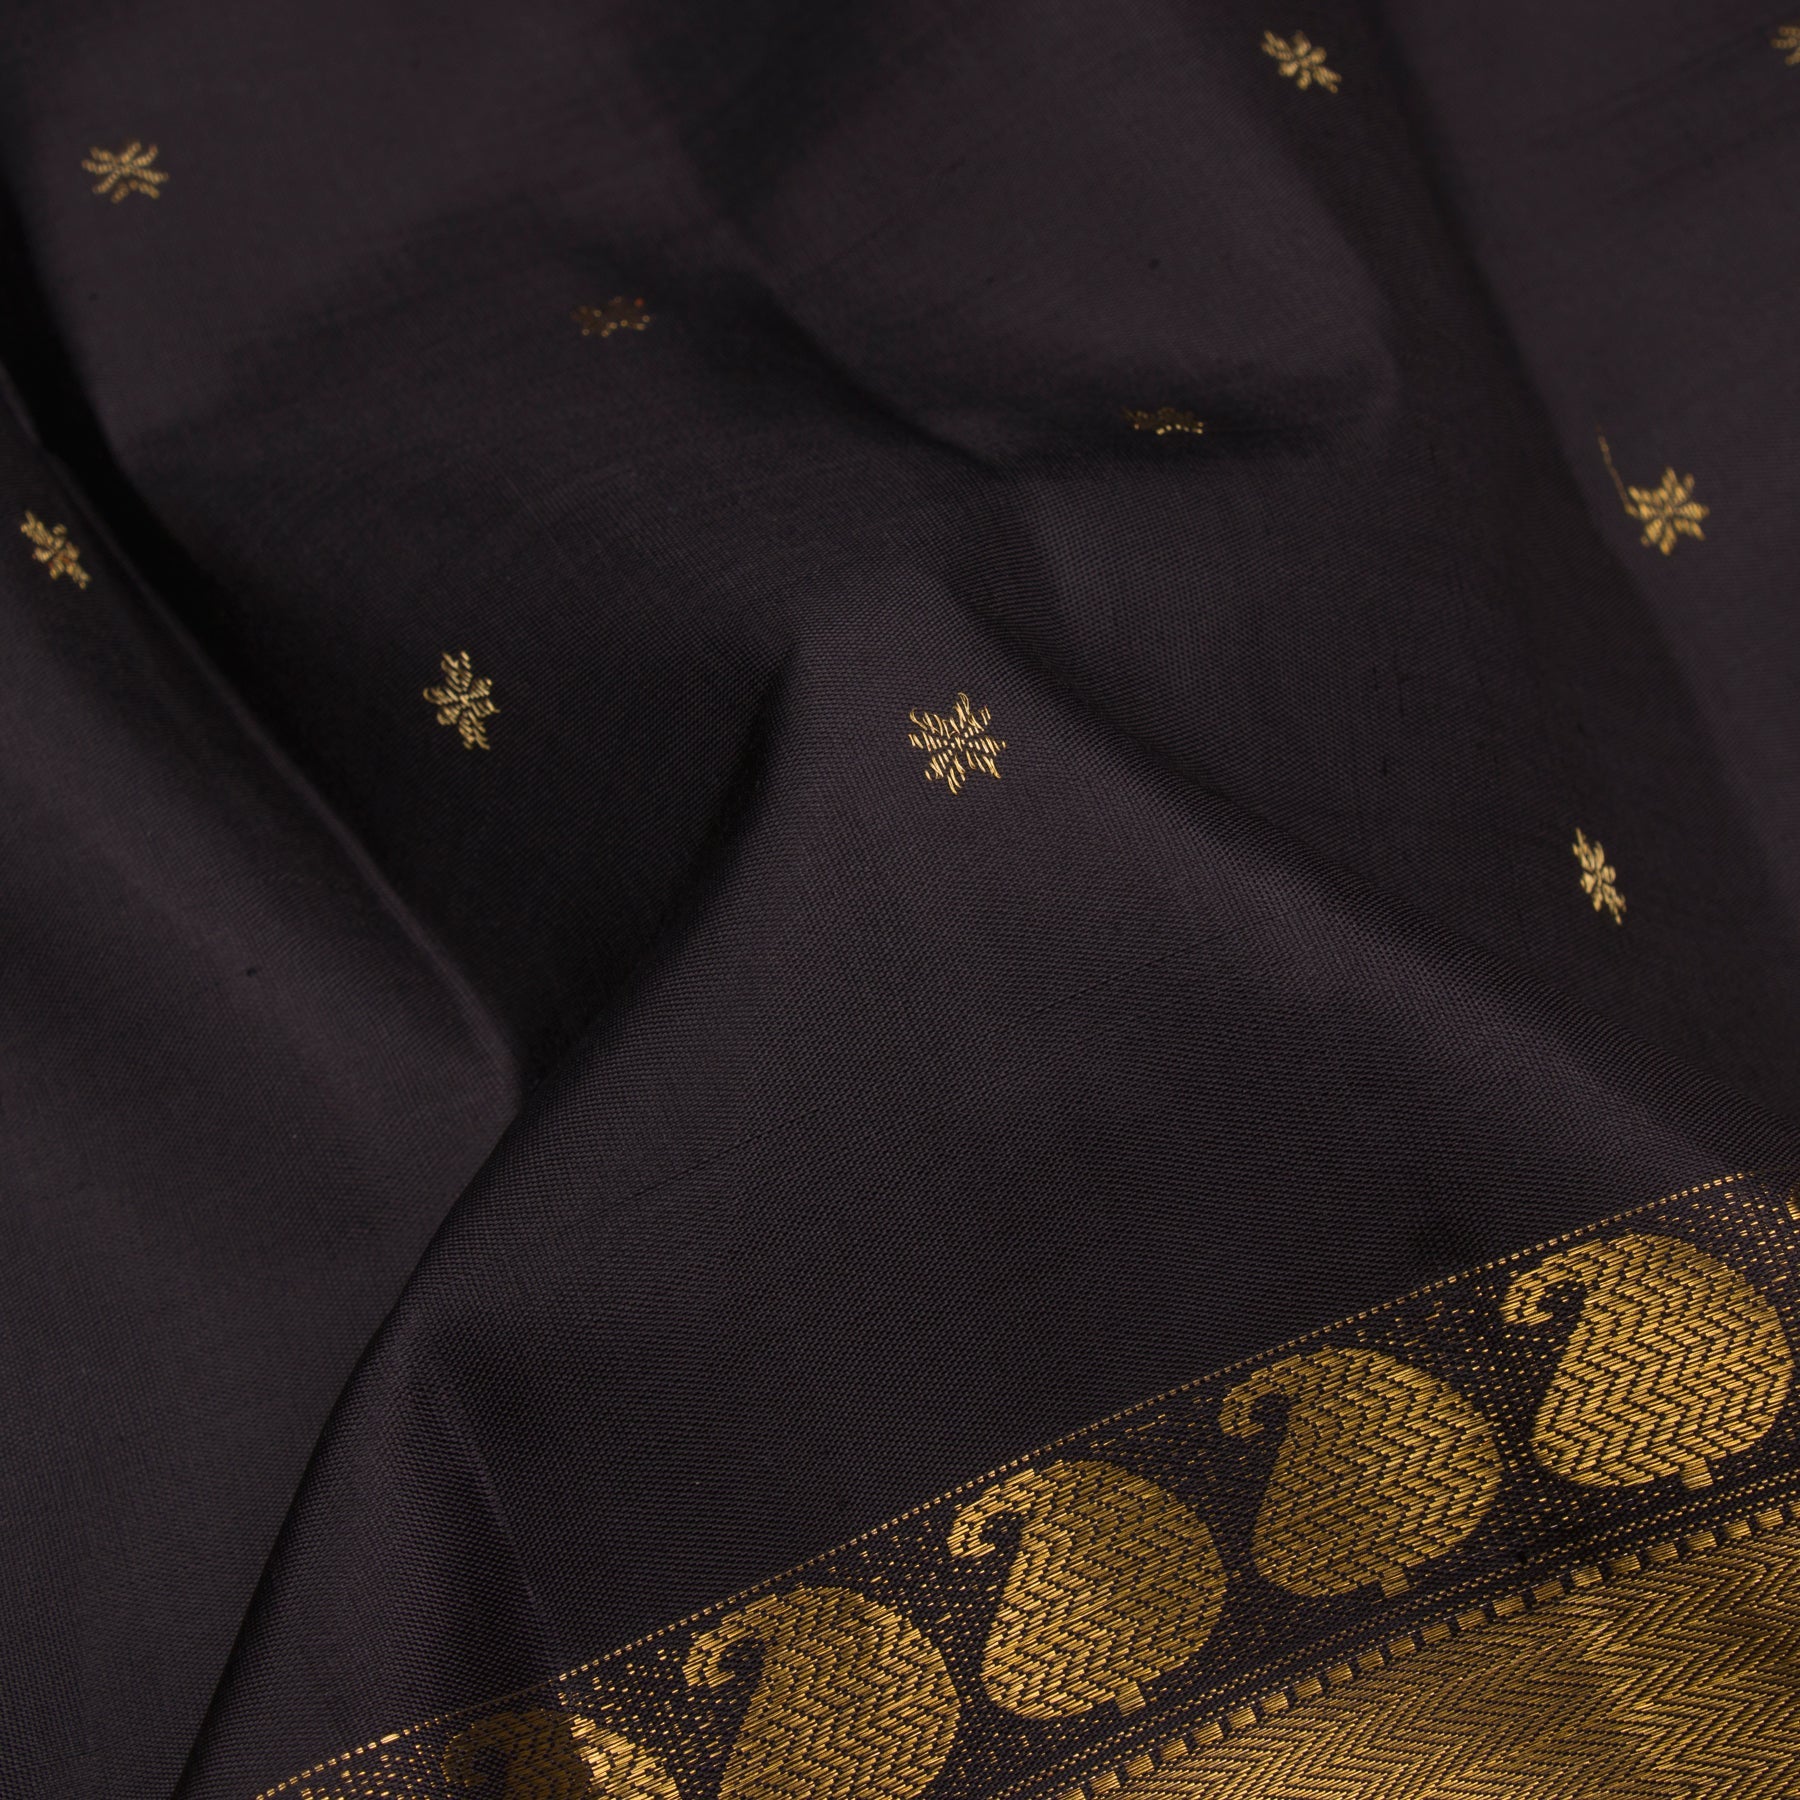 Kanakavalli Kanjivaram Silk Sari 23-599-HS001-06795 - Fabric View